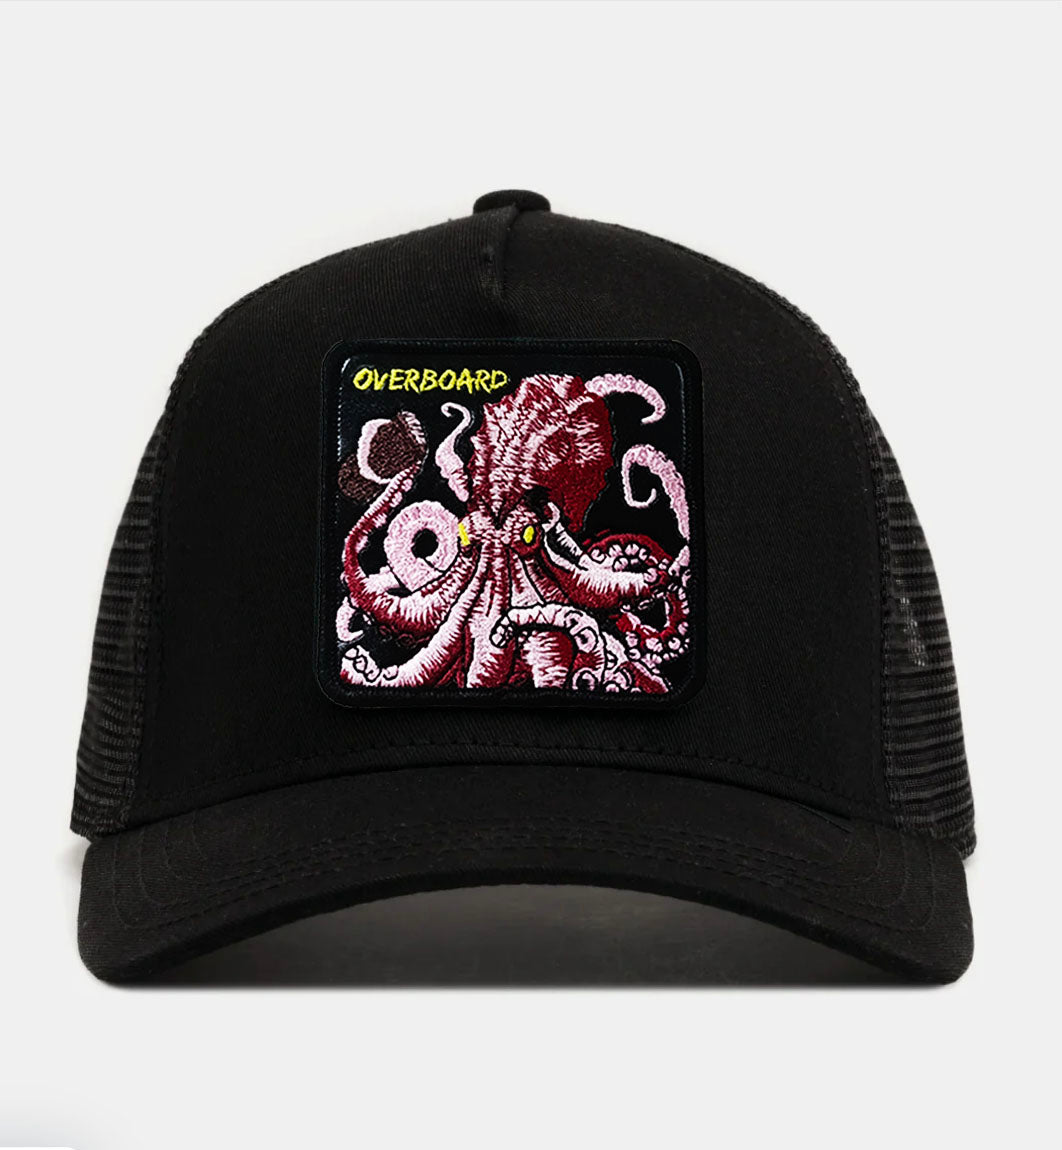 Kraken - "Overboard" Trucker Hat